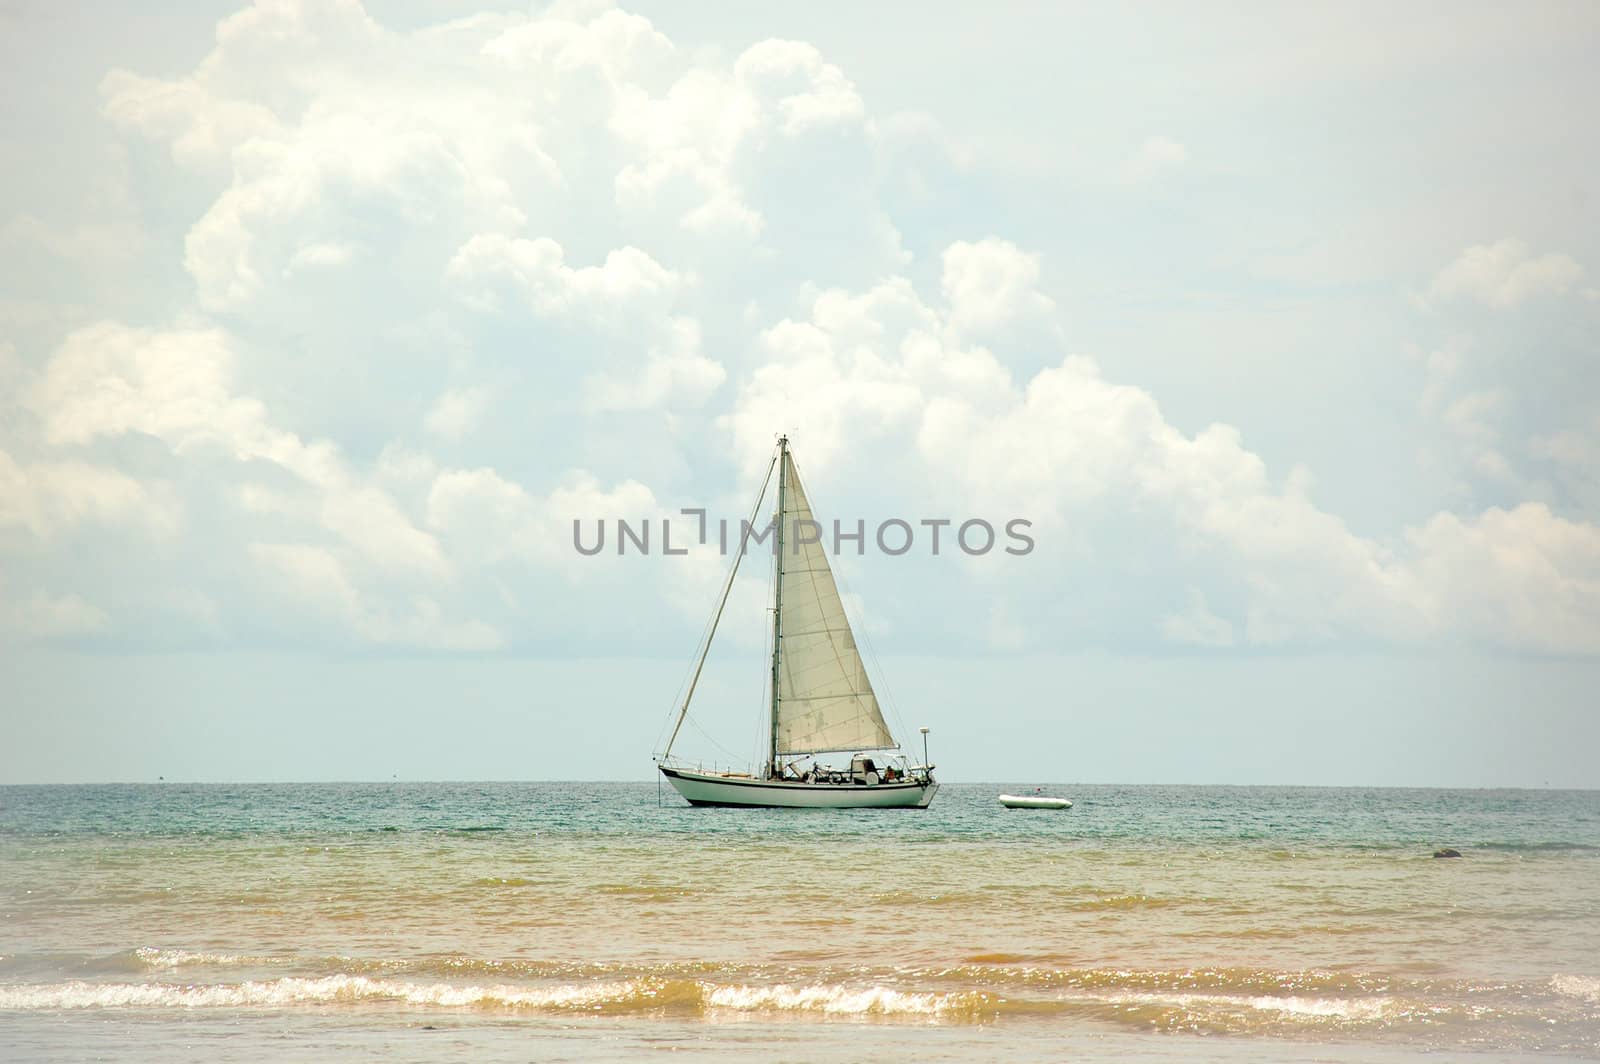 Boat sayling near the beach